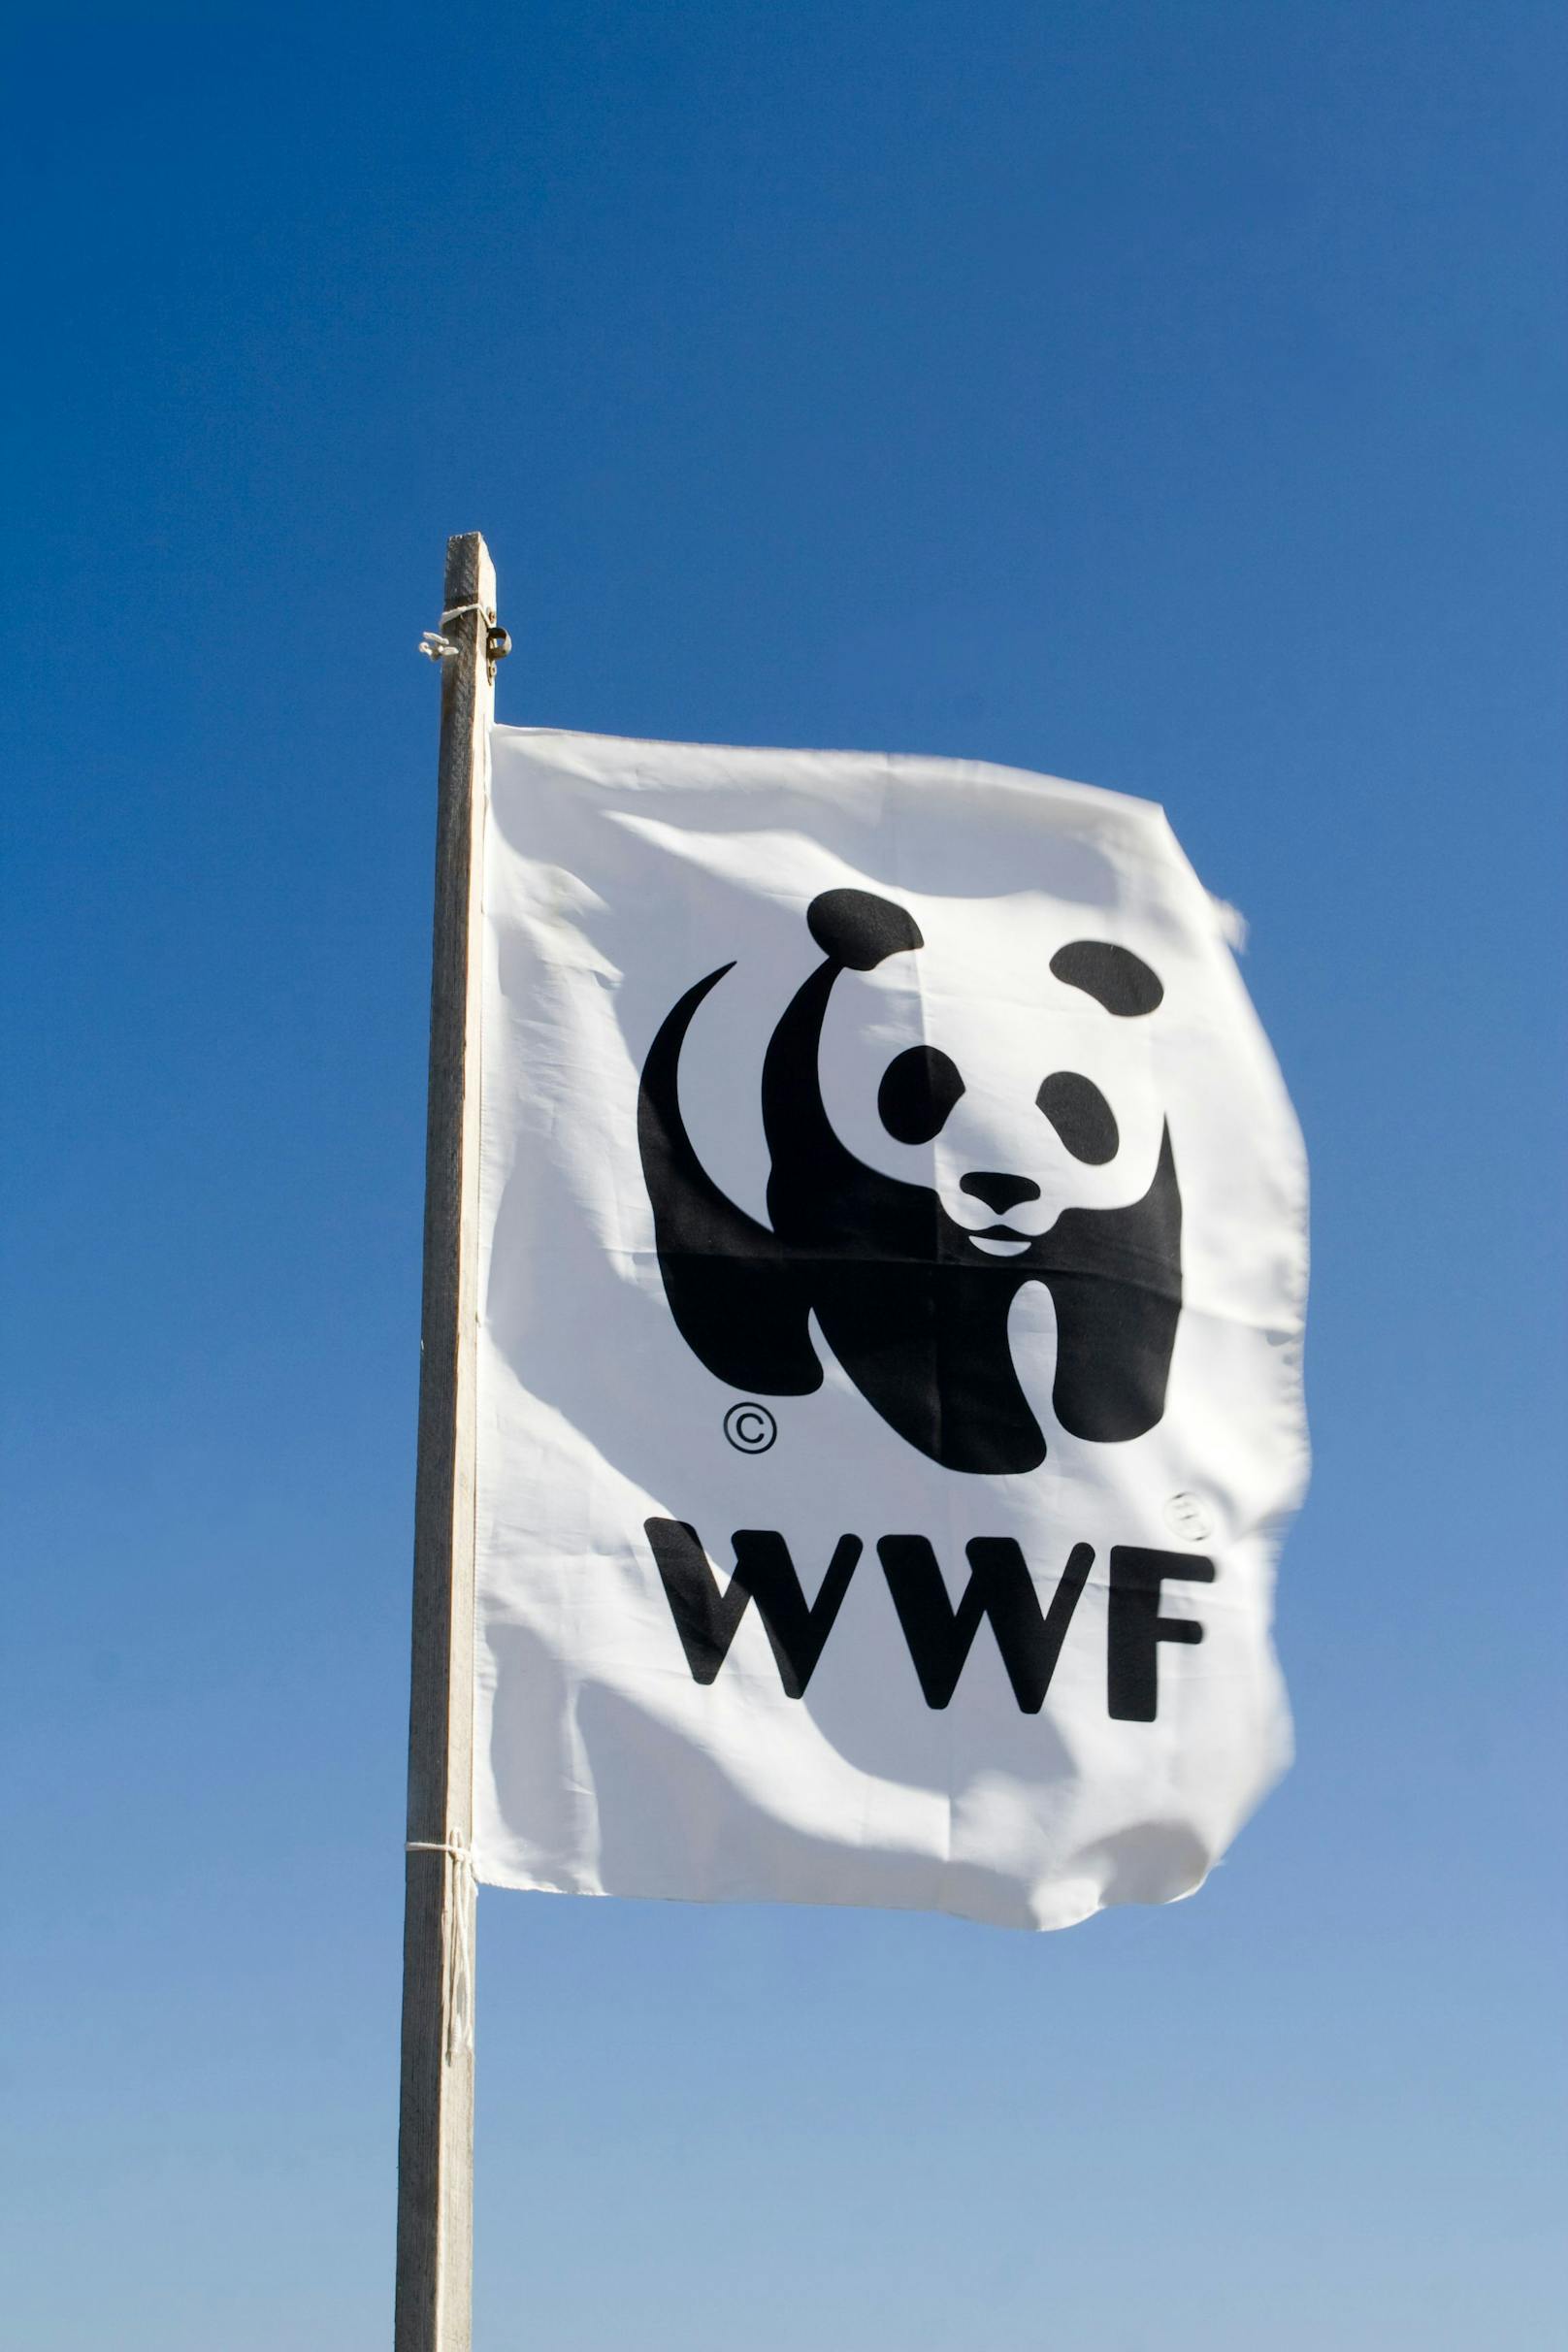 Russland stuft WWF jetzt als "ausländischen Agent" ein